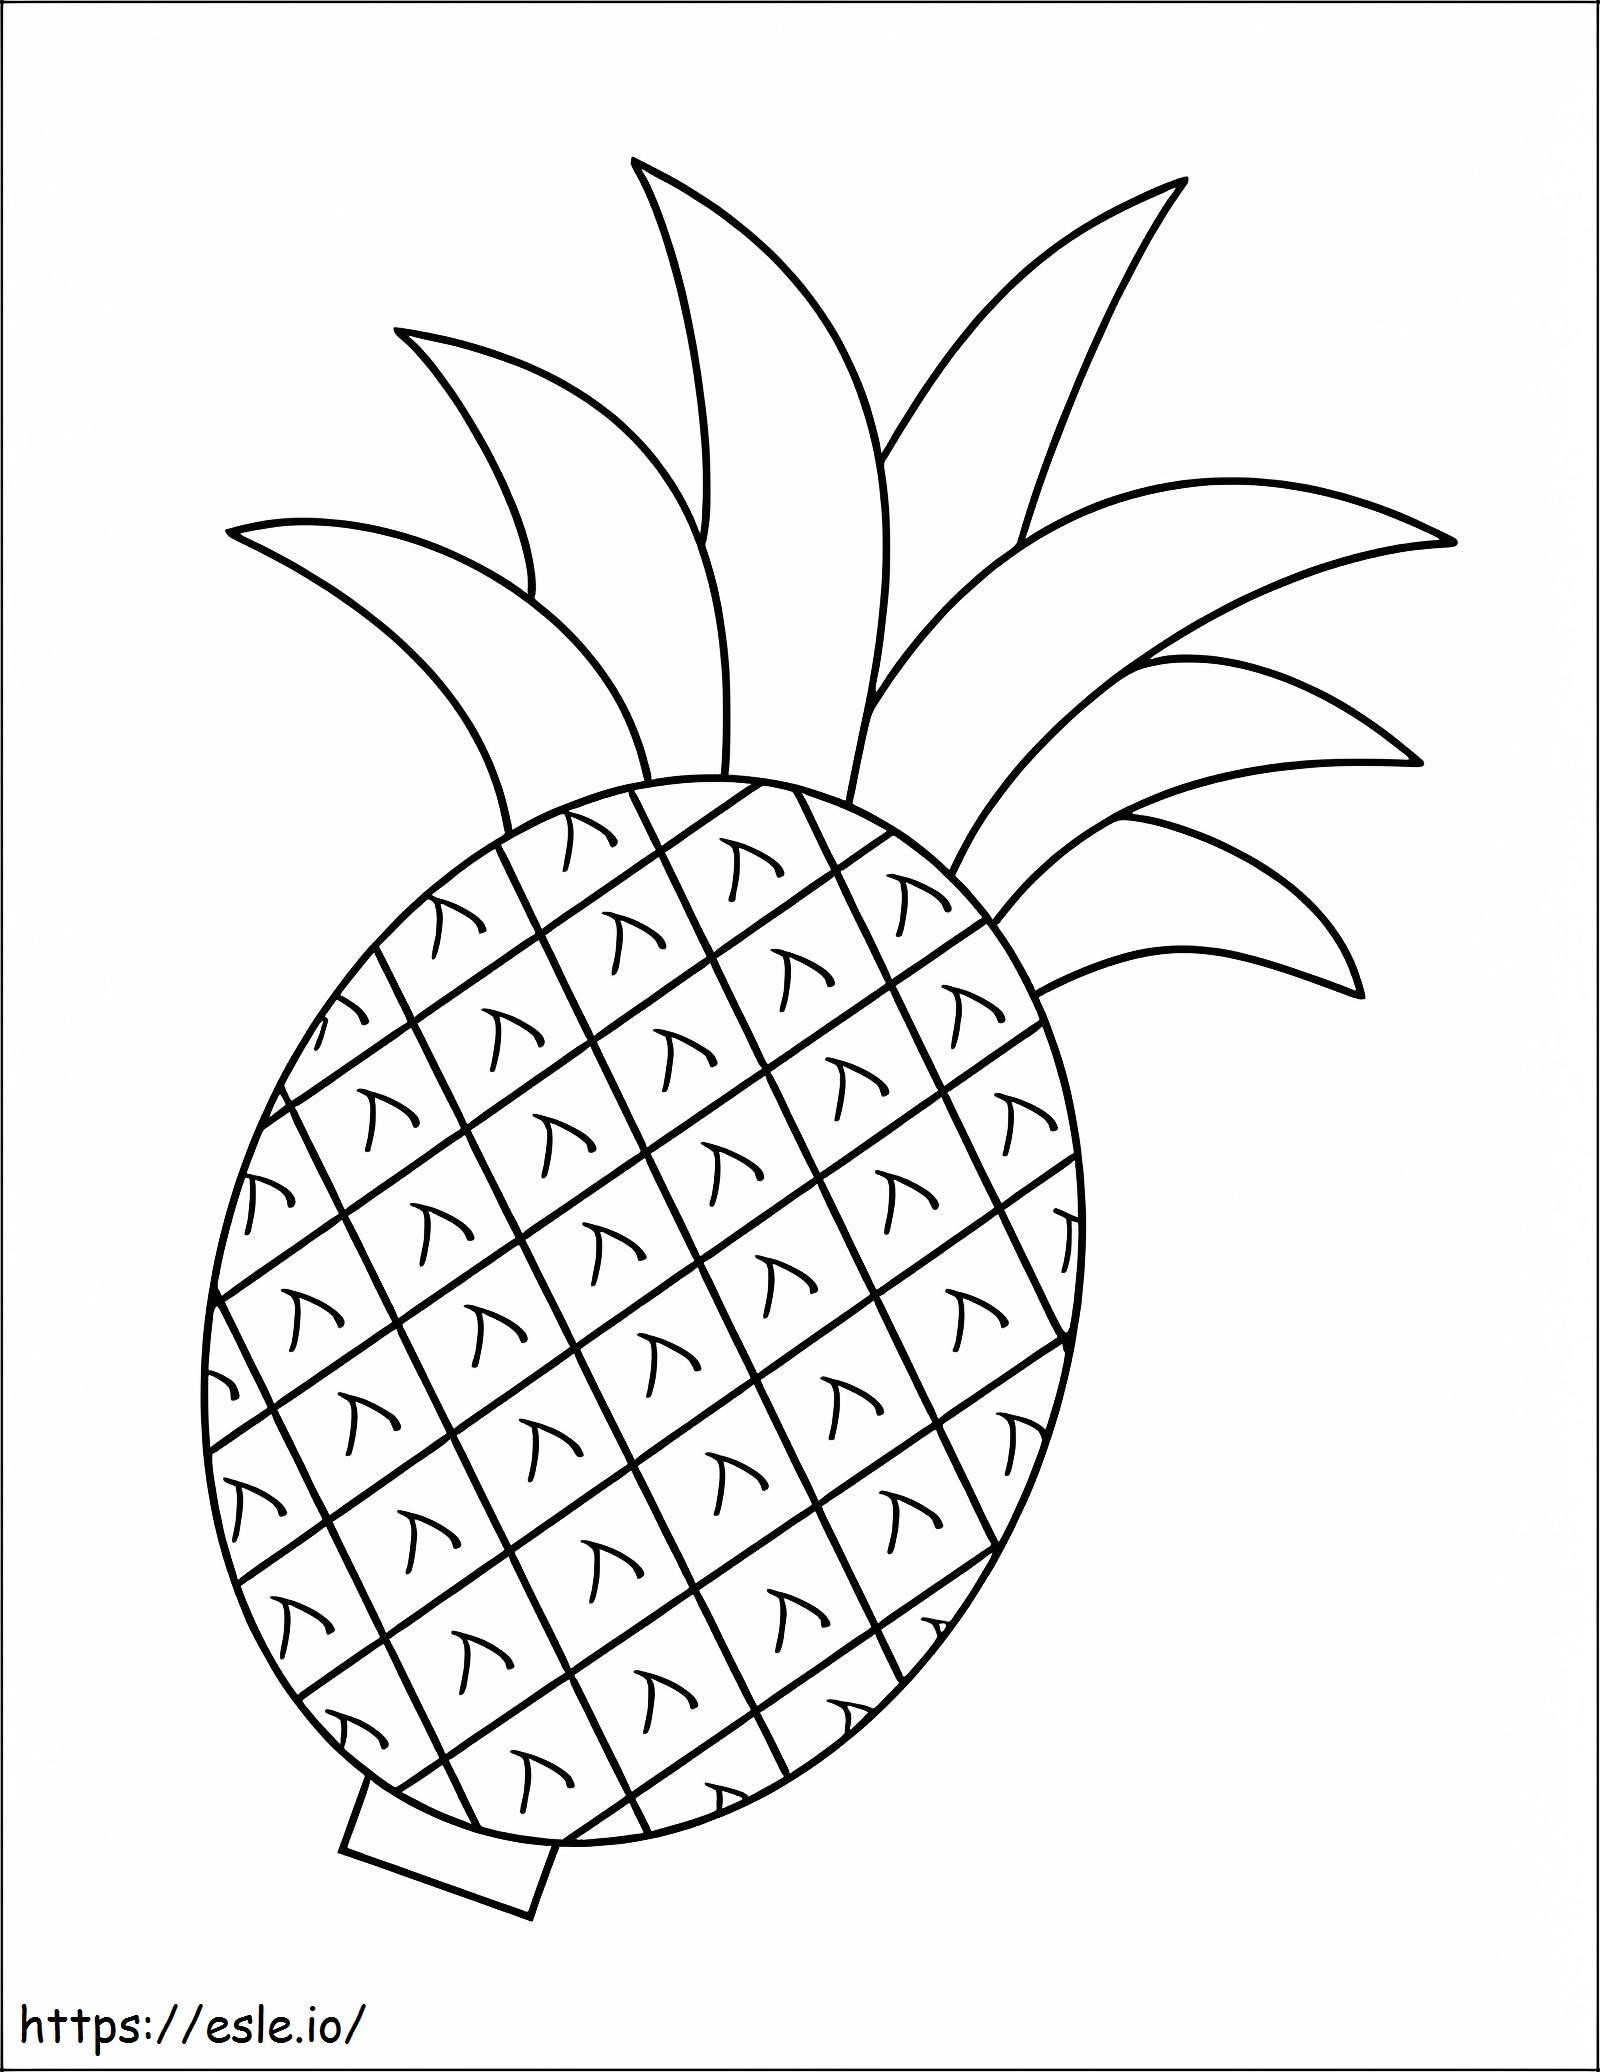 Coloriage Ananas gratuit à imprimer dessin